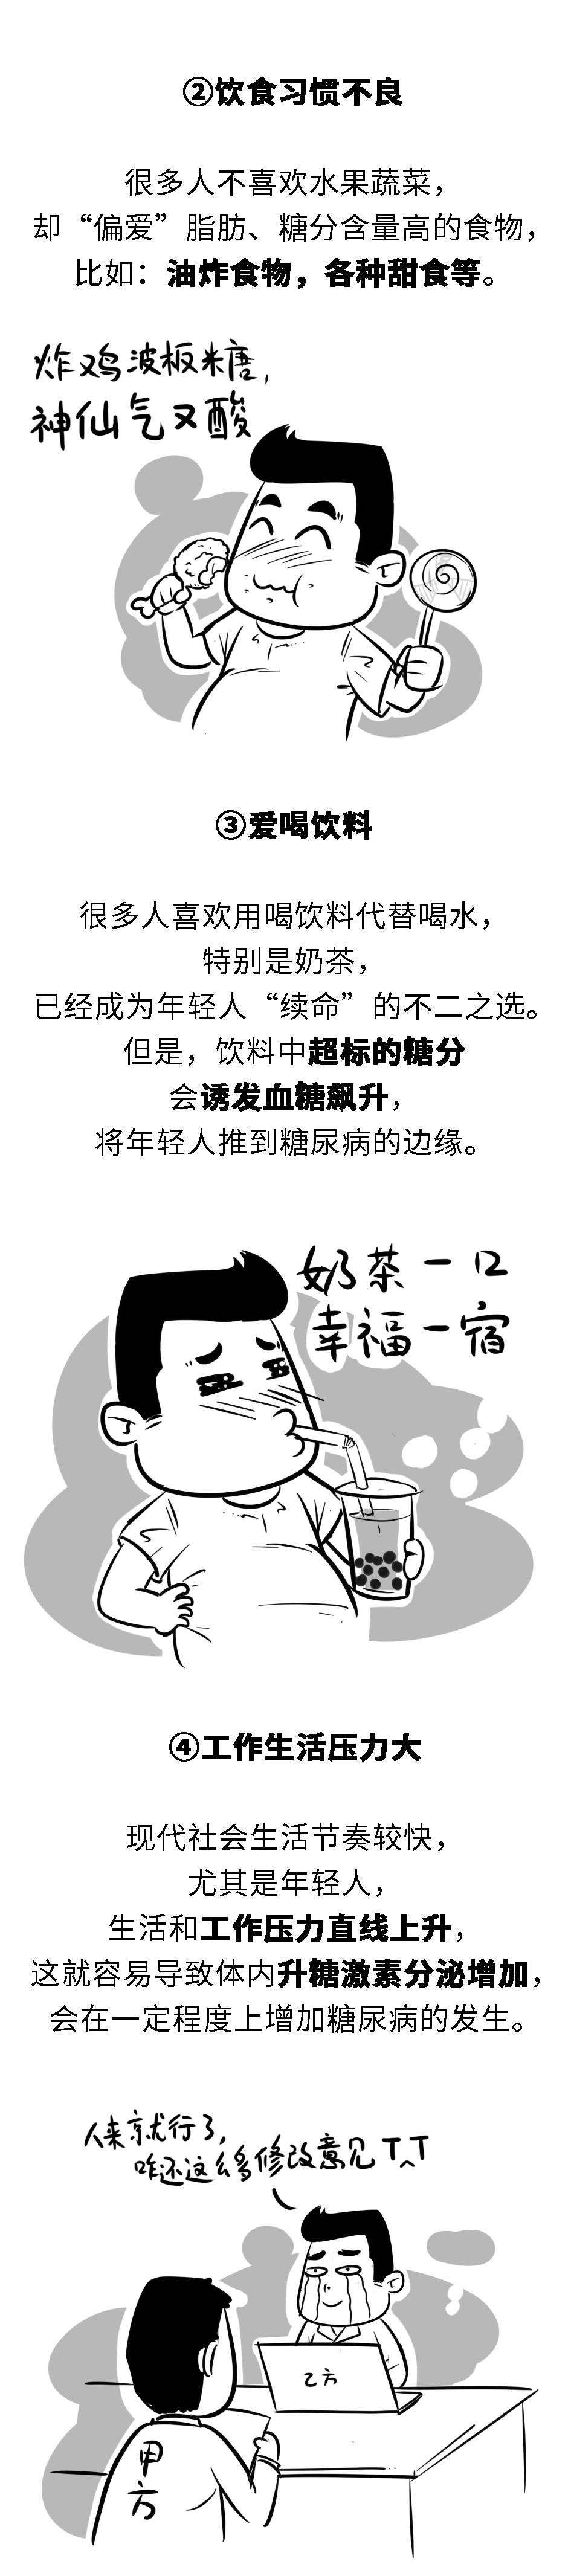 赵文惠|糖尿病盯上年轻人，背后原因需要警惕！